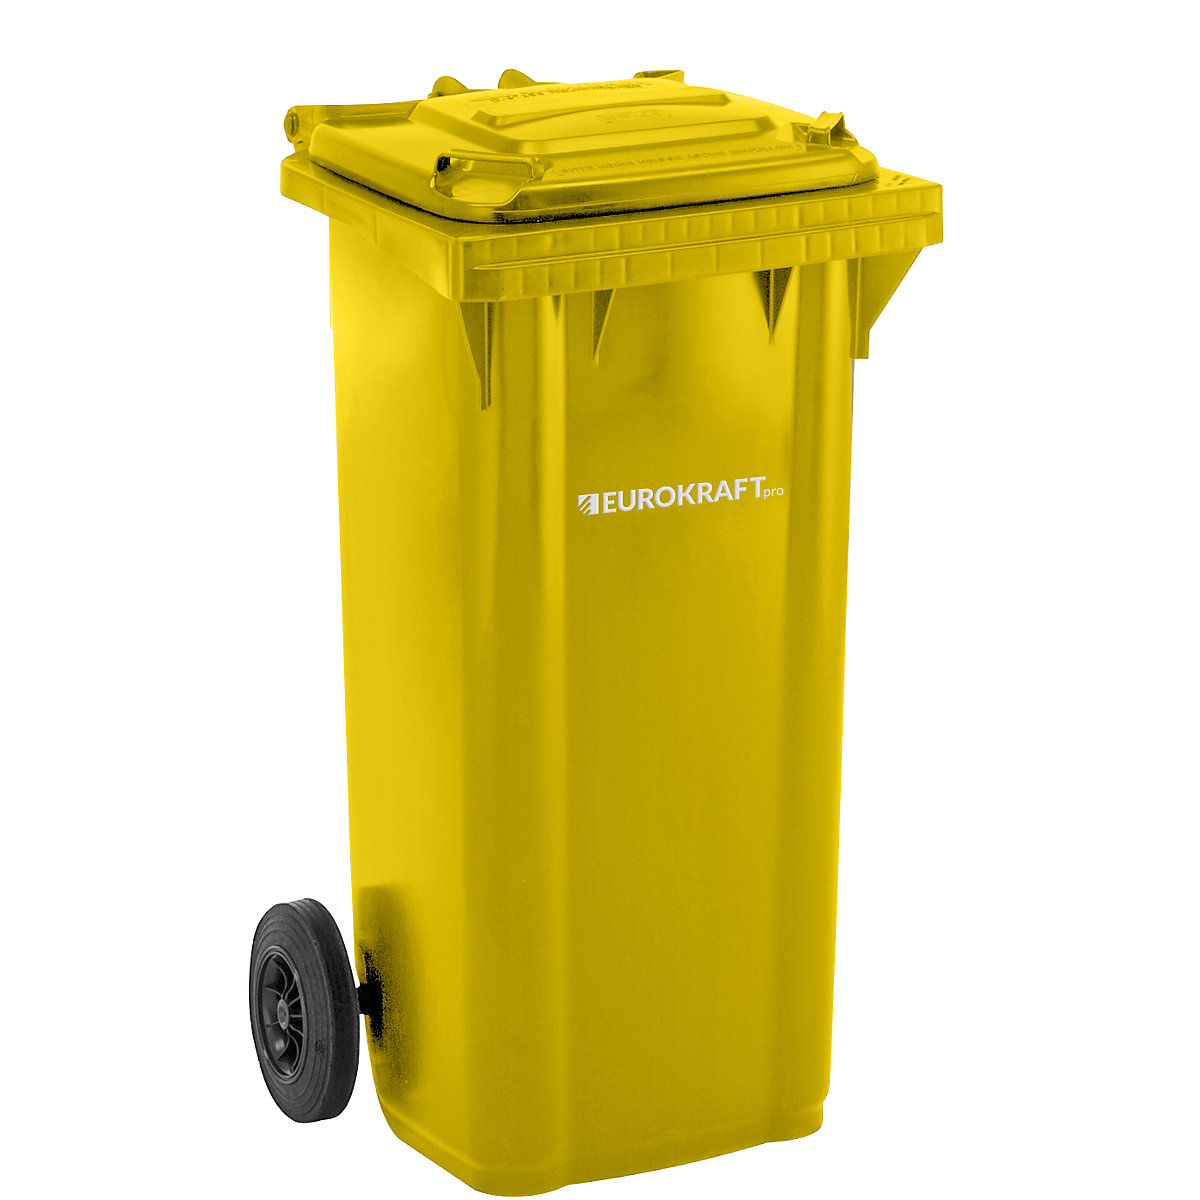 EUROKRAFTpro – Plastic waste bin, DIN EN 840, capacity 120 l, WxHxD 505 x 1005 x 555 mm, yellow